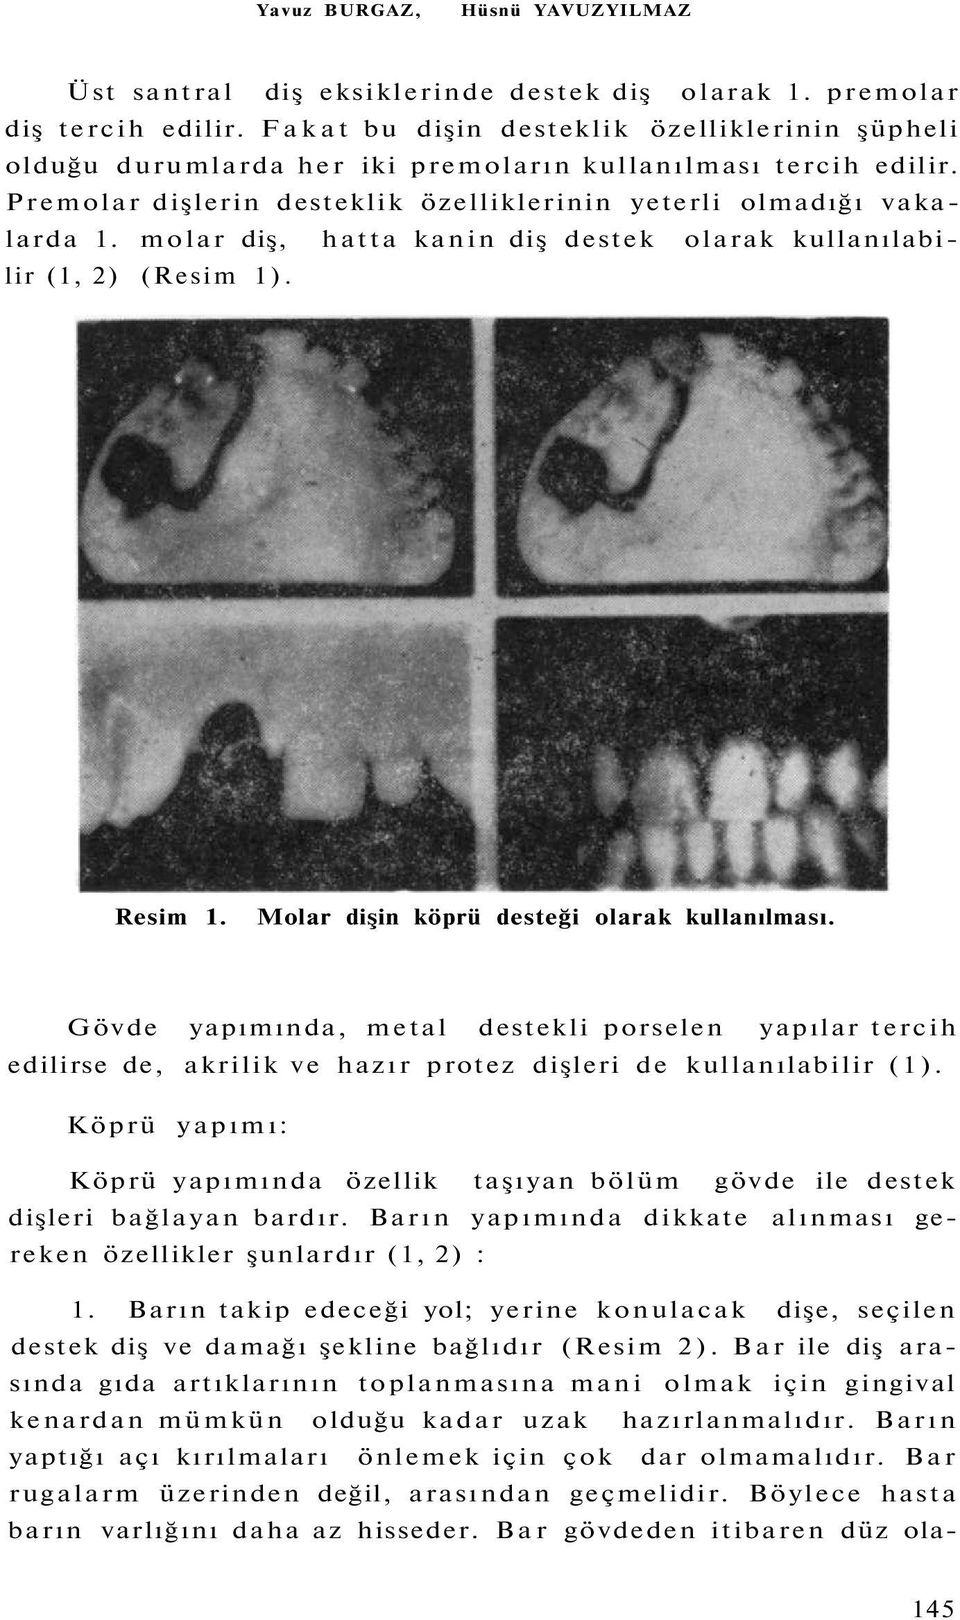 molar diş, hatta kanin diş destek olarak kullanılabilir (1, 2) (Resim 1). Resim 1. Molar dişin köprü desteği olarak kullanılması.